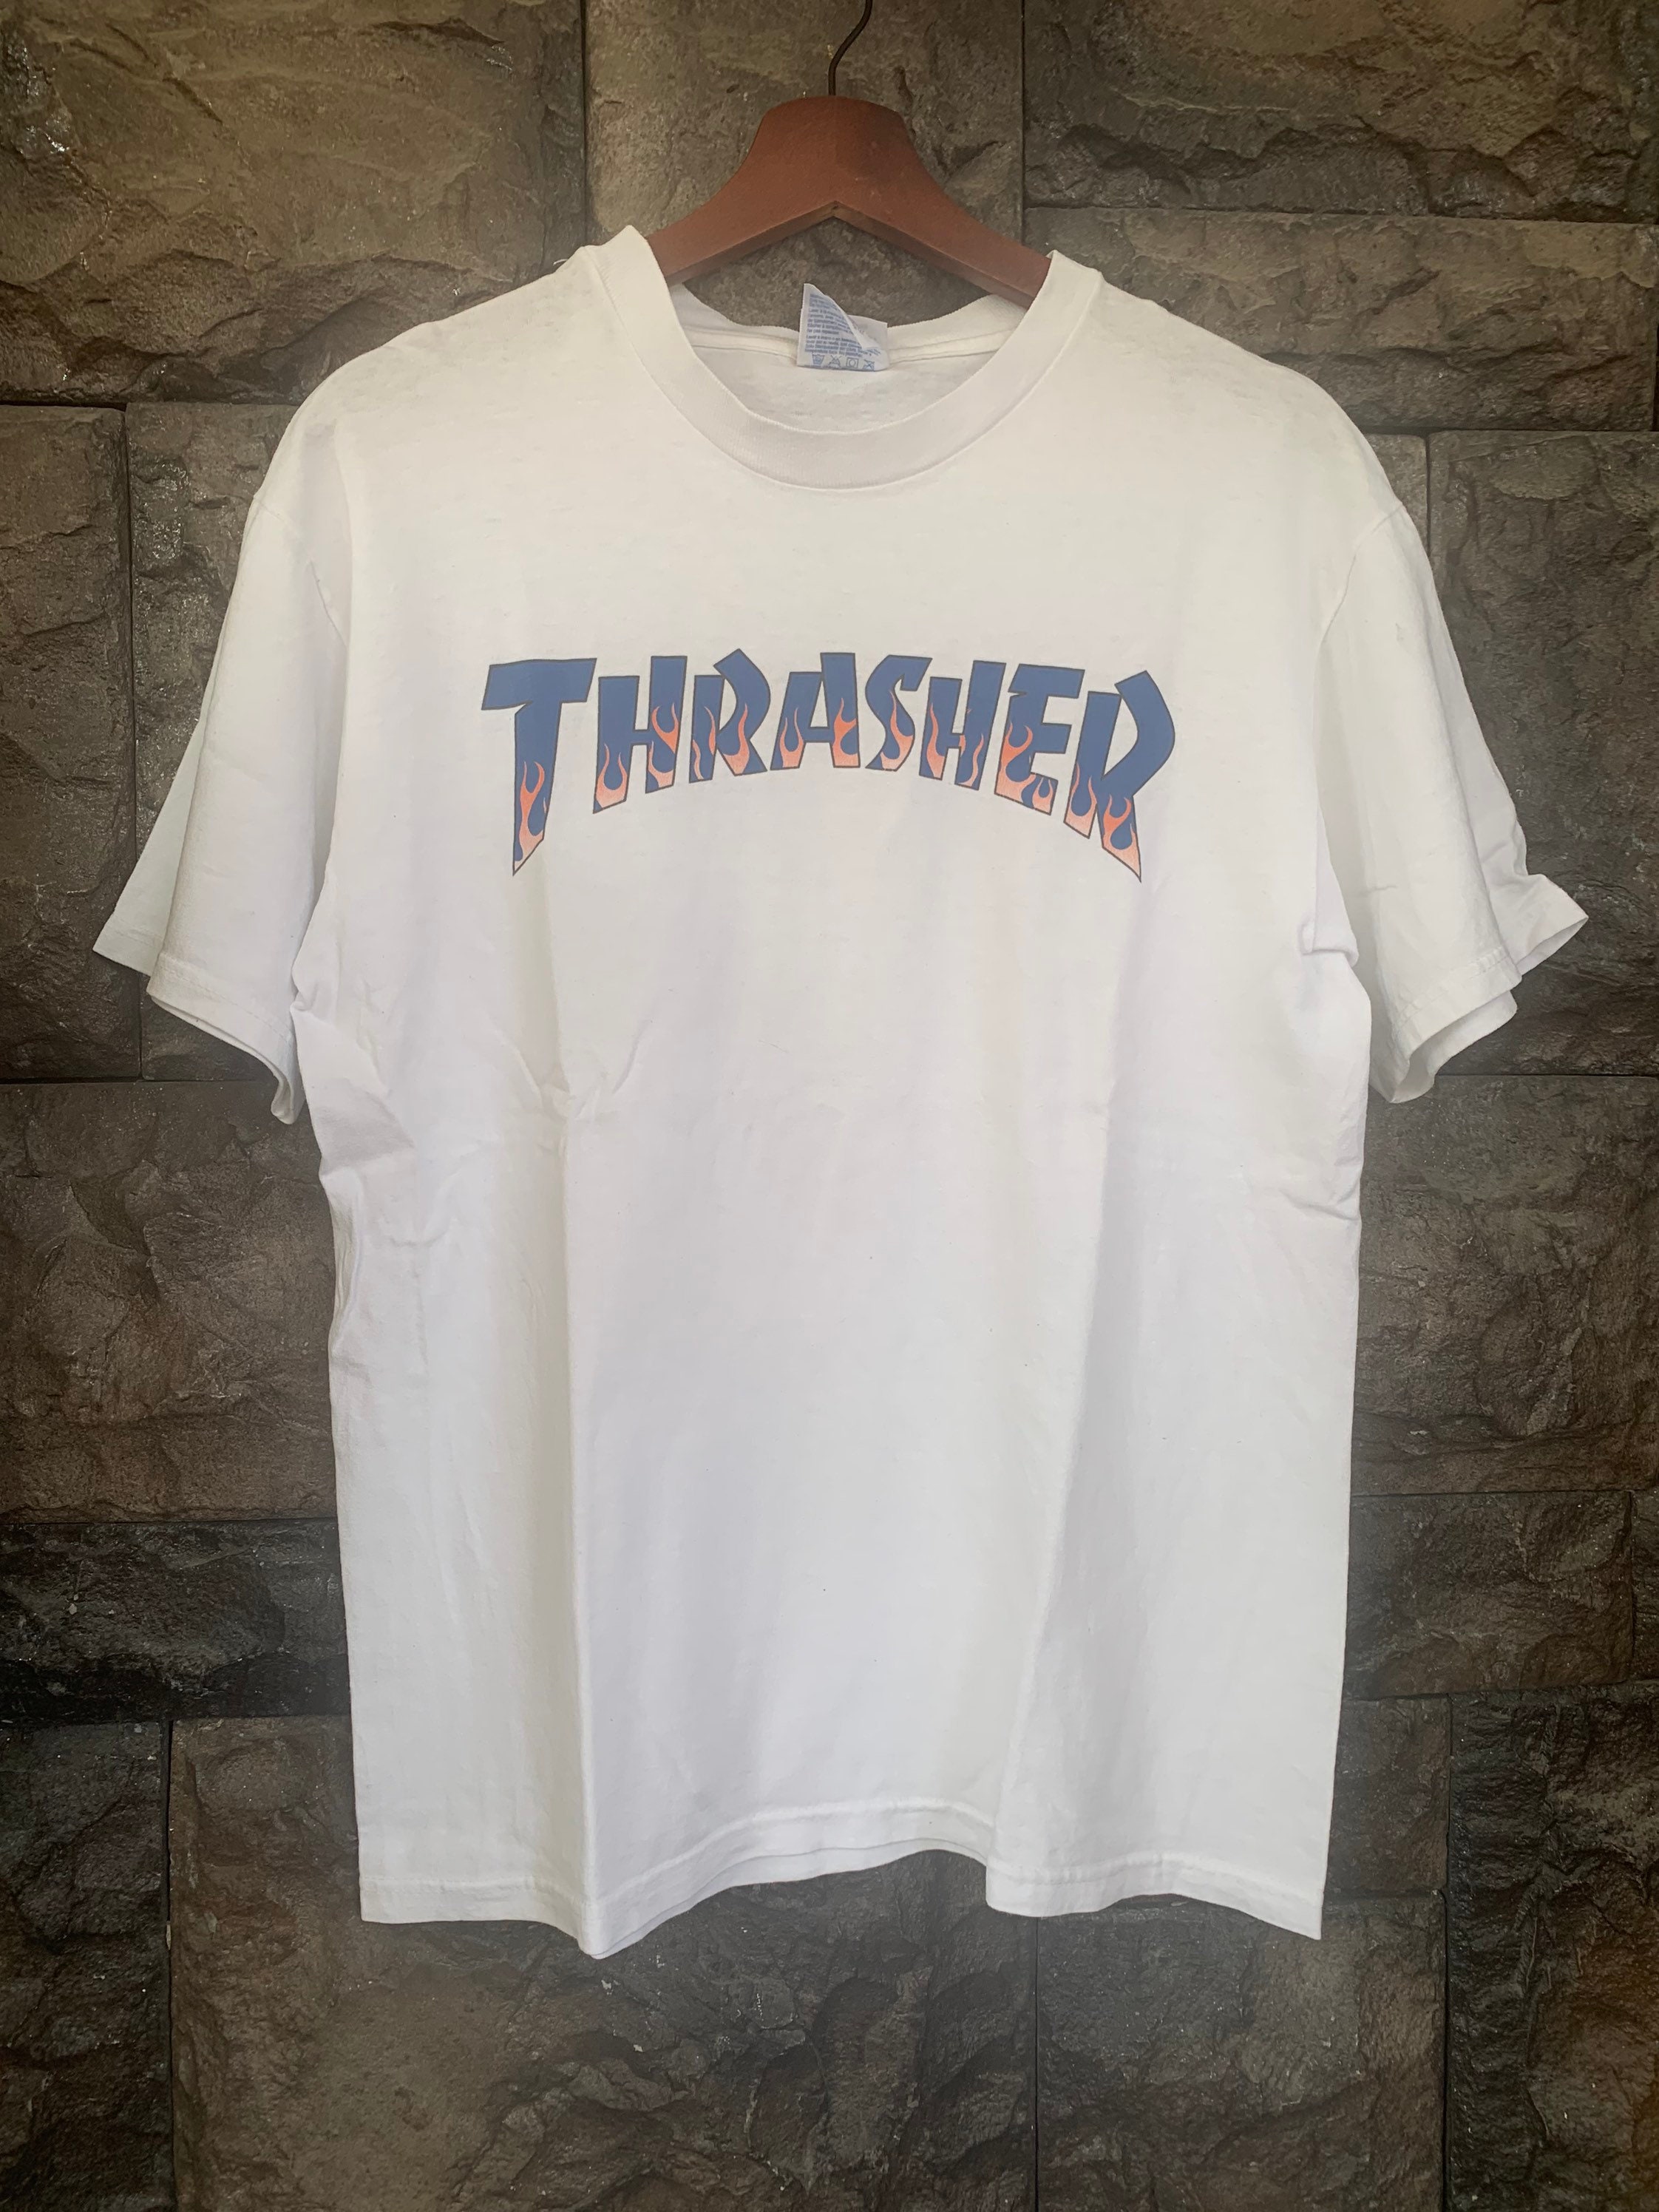 Vintage Thrasher Shirt / Skateboarding T shirt | Etsy